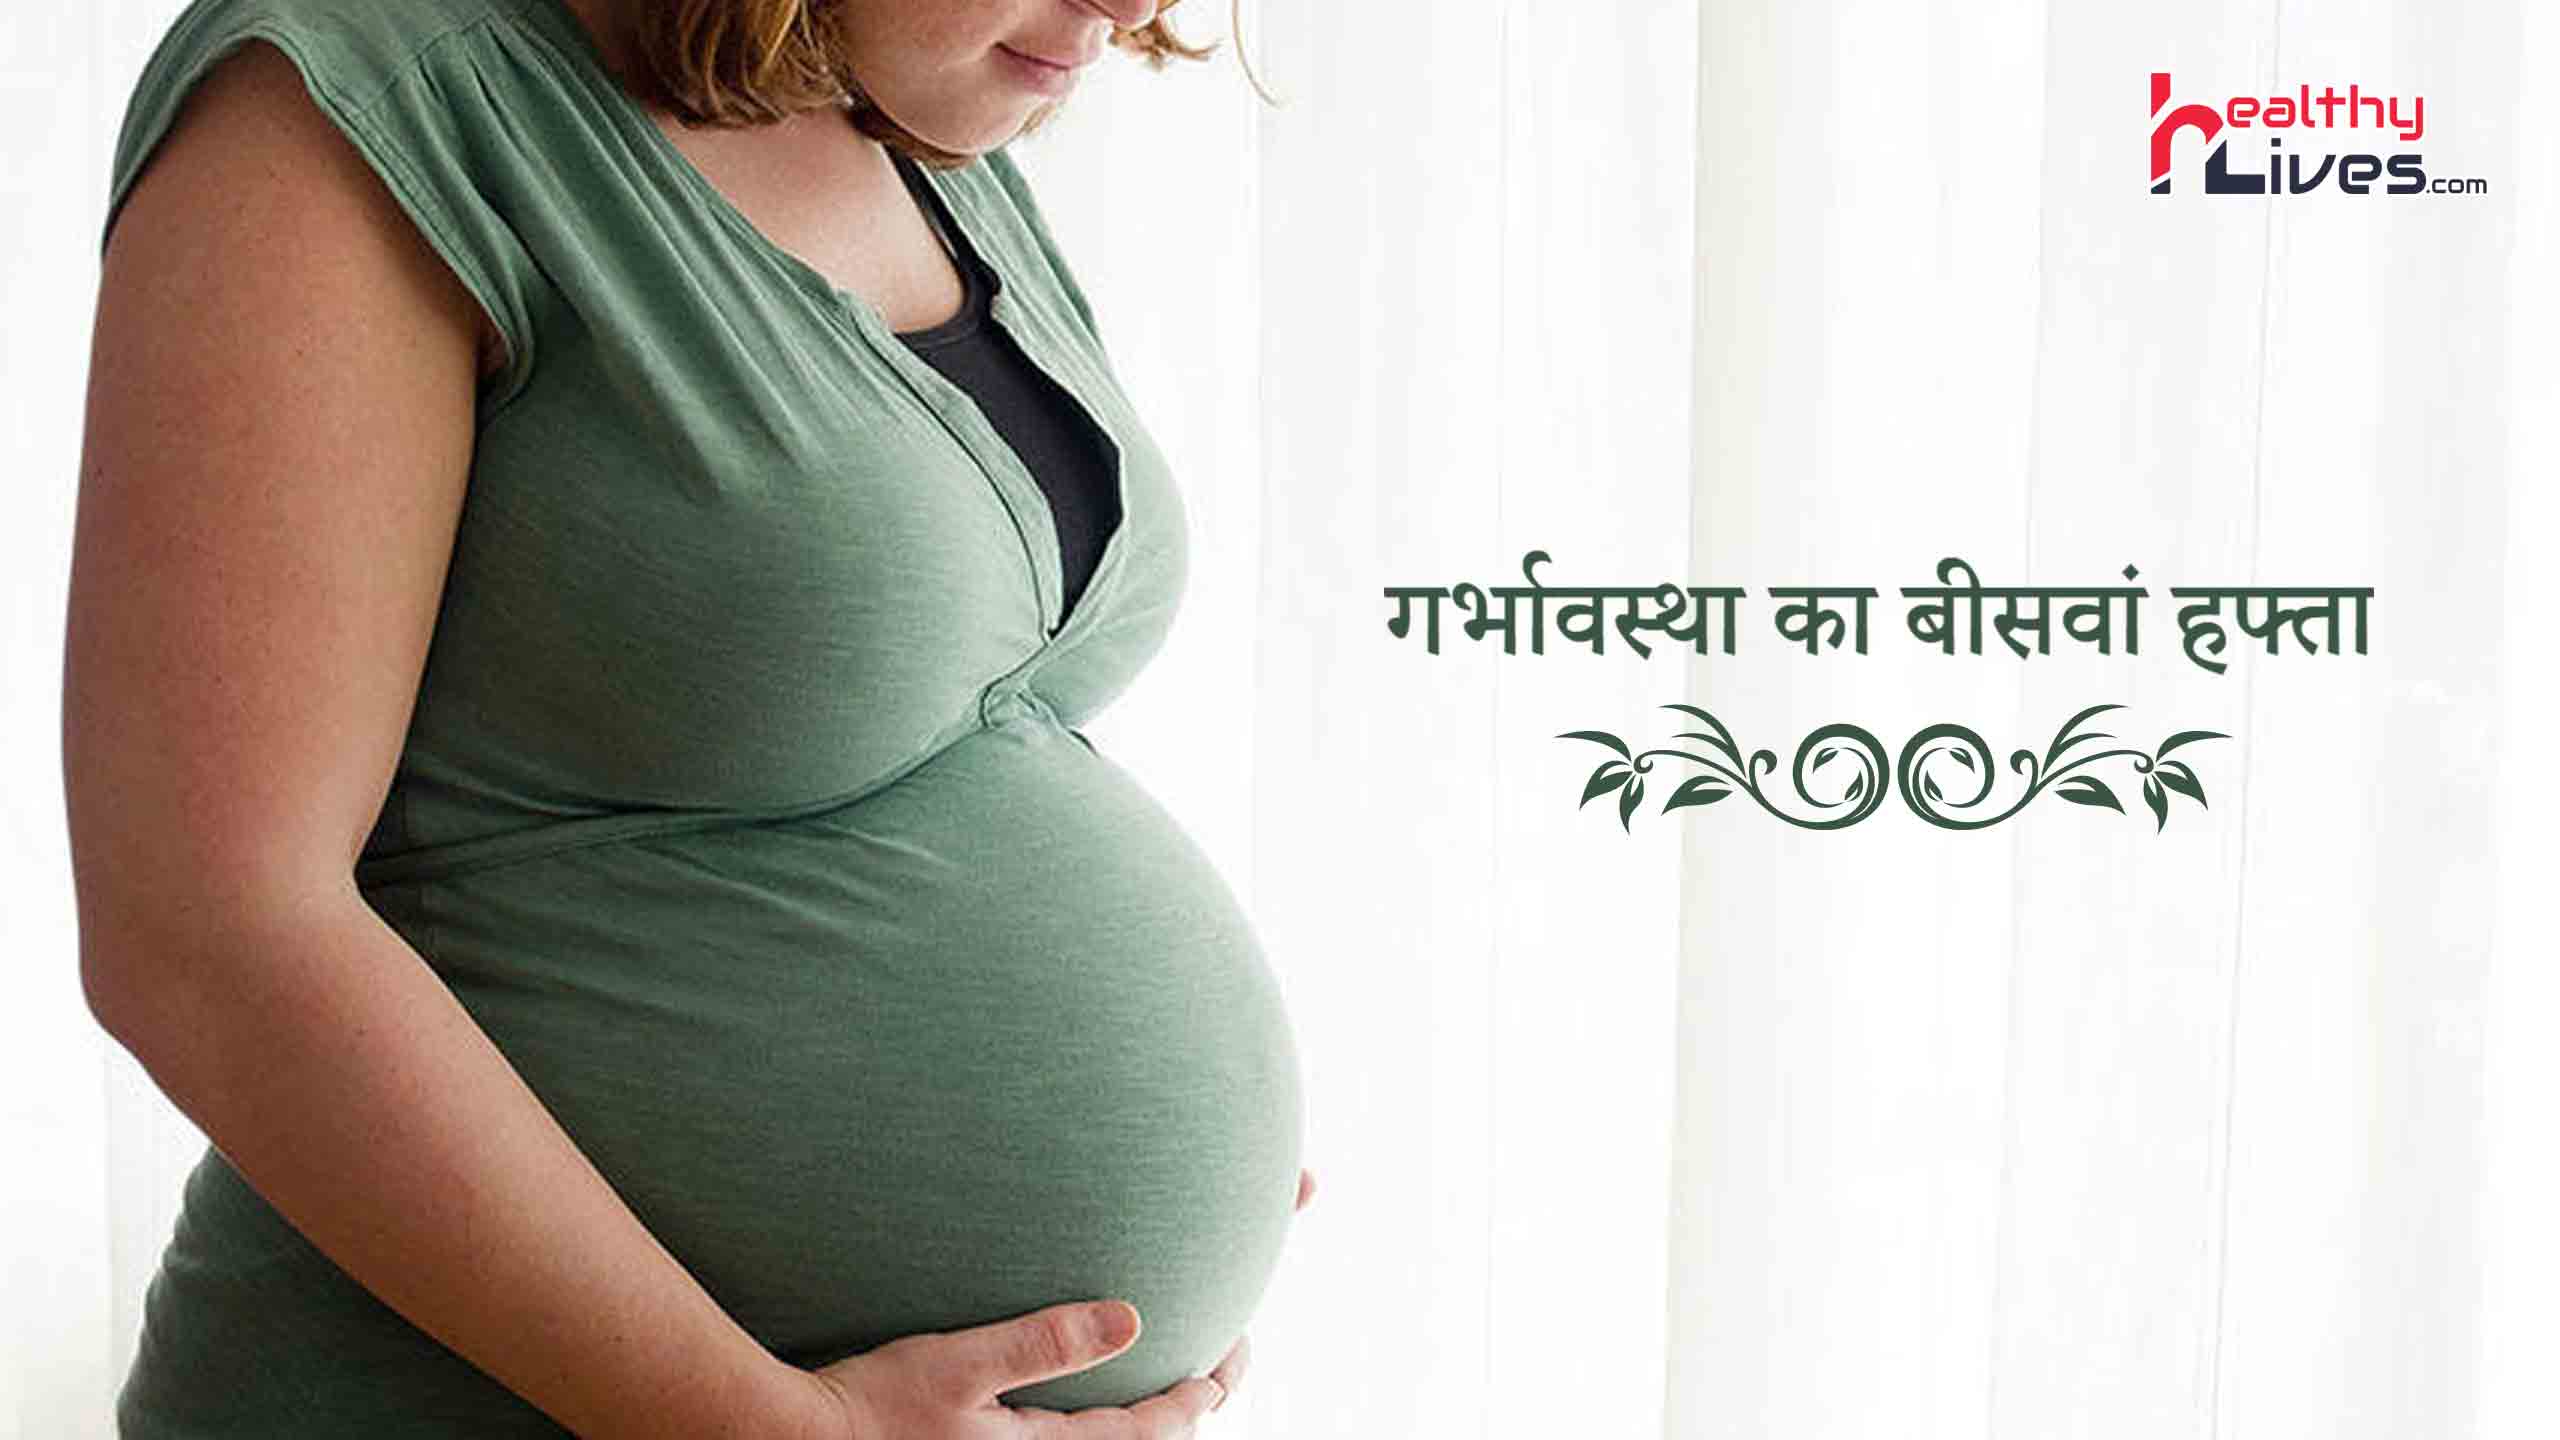 Pregnancy 20 Weeks: जानिए गर्भावस्था के 20 वे सप्ताह की महत्वपूर्ण जानकारी